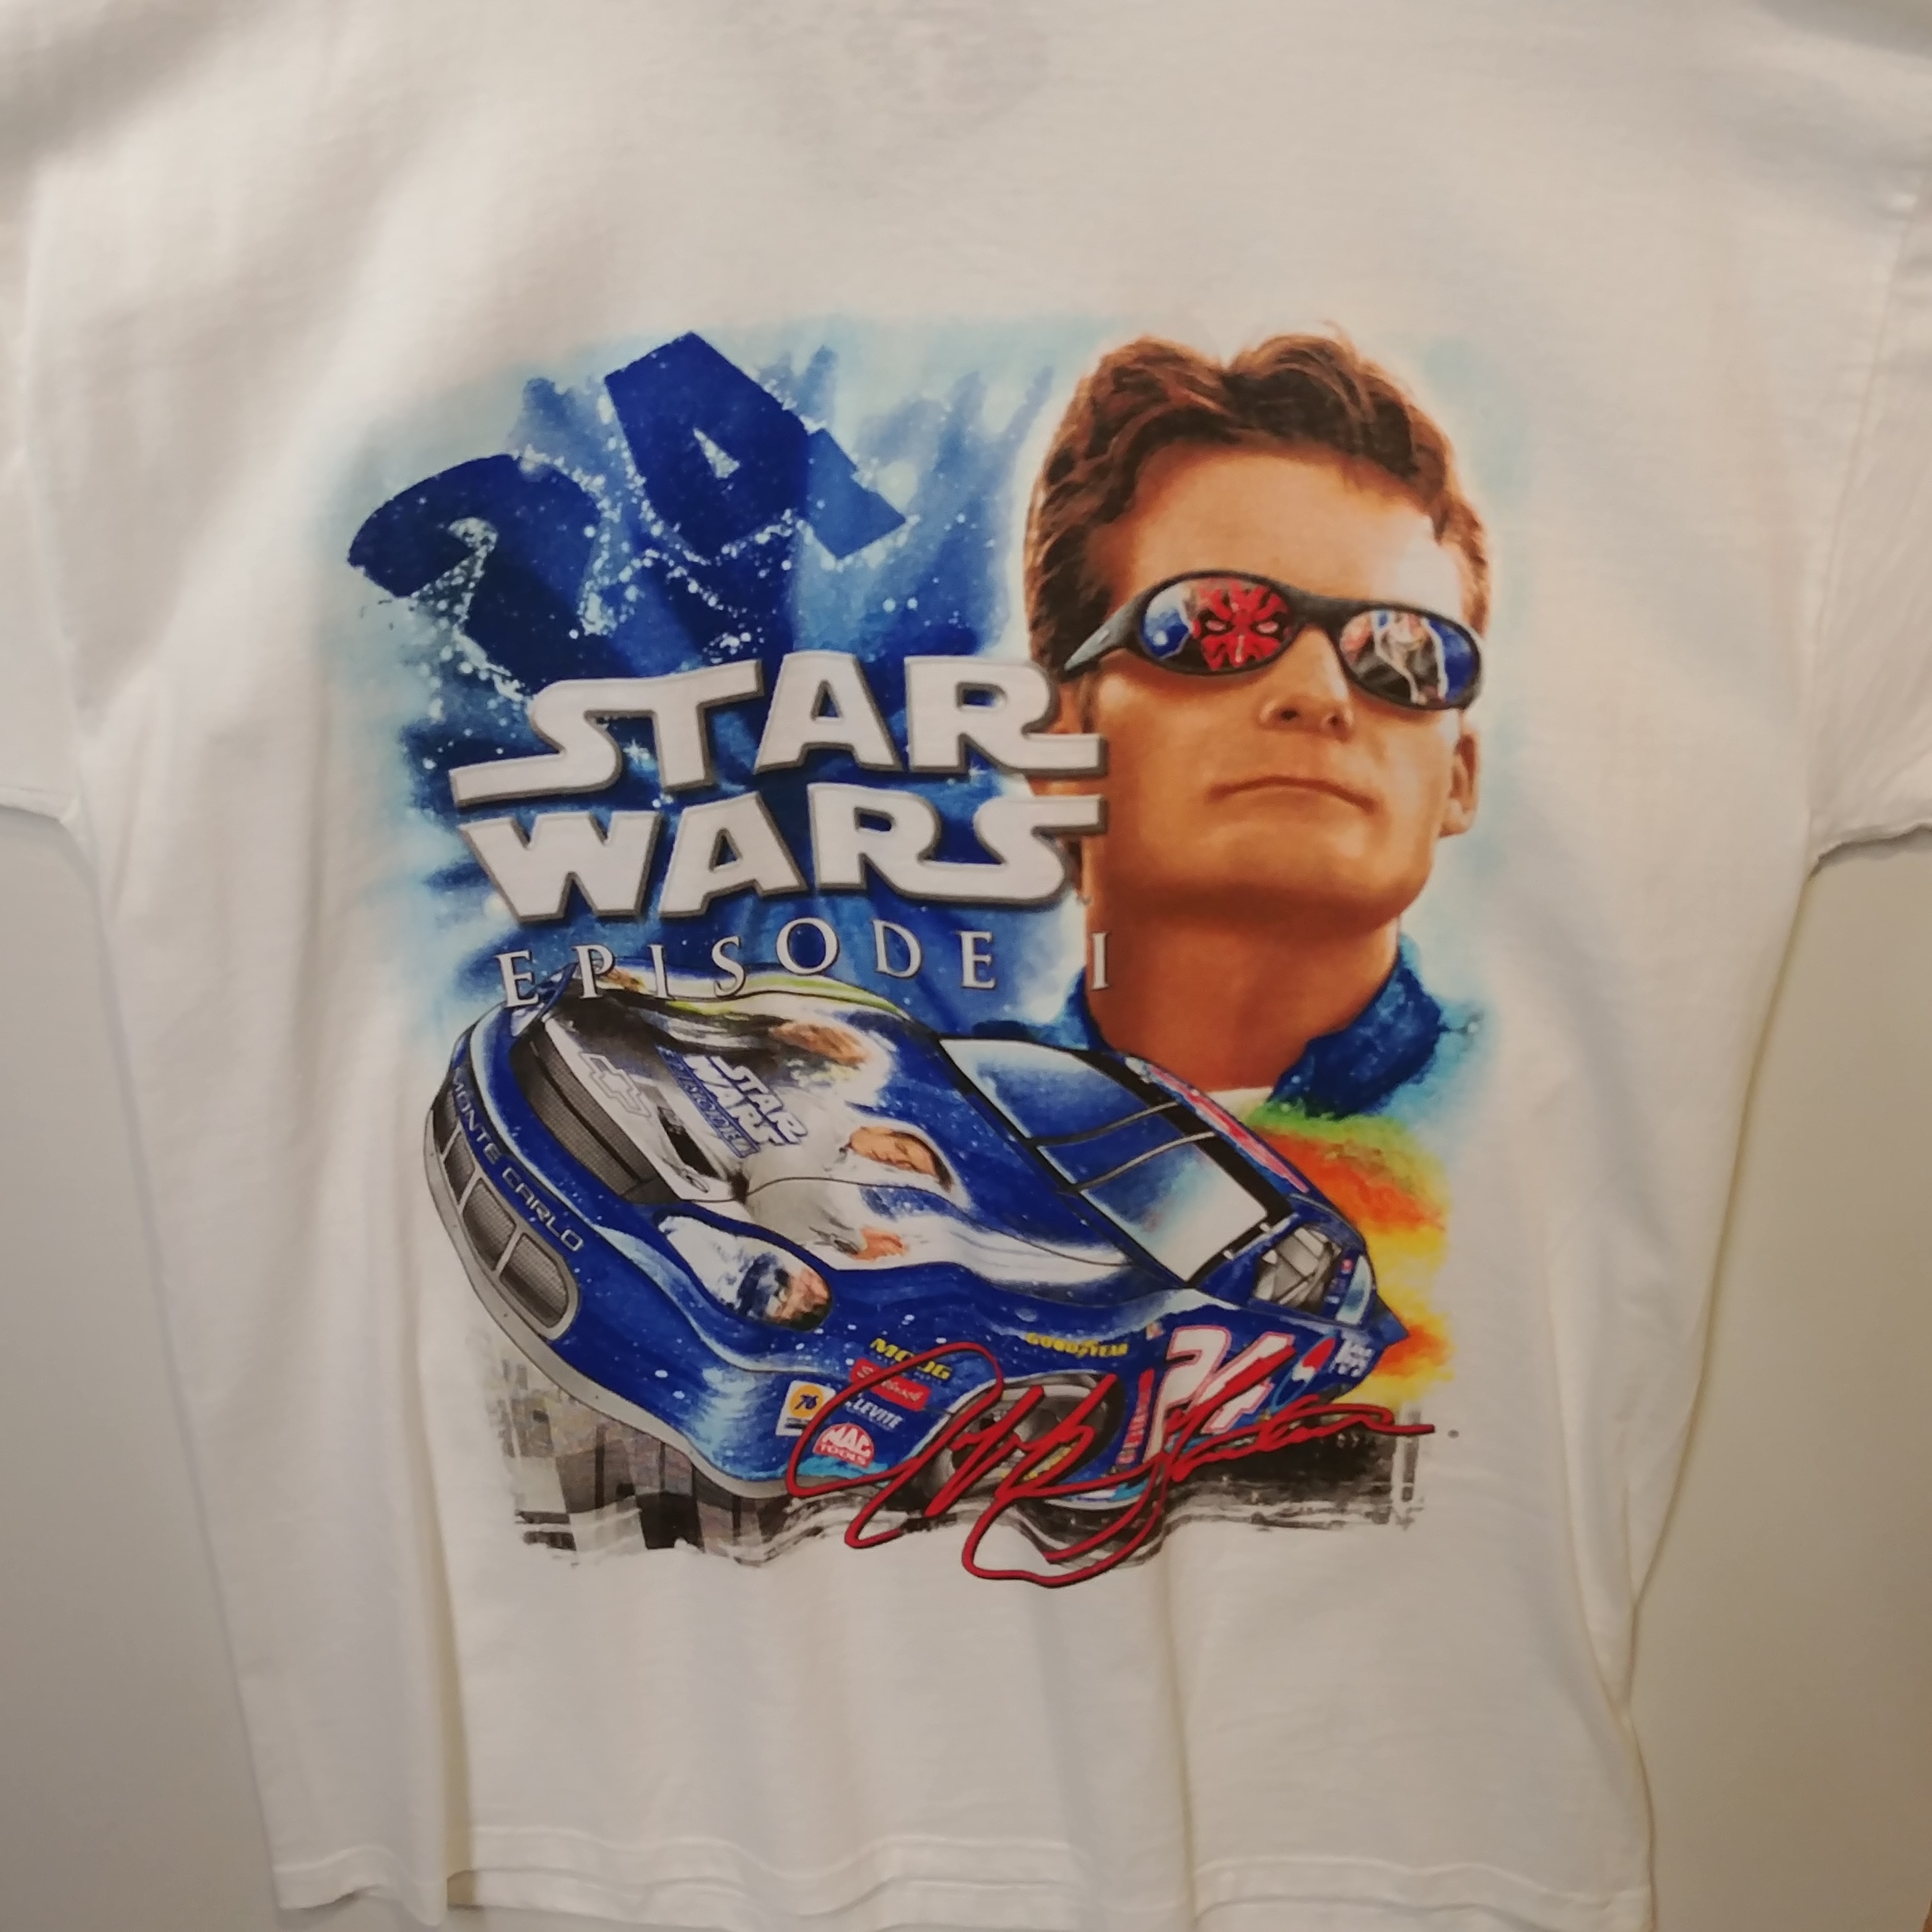 1999 Jeff Gordon Pepsi "Star Wars Episode 1" white tee